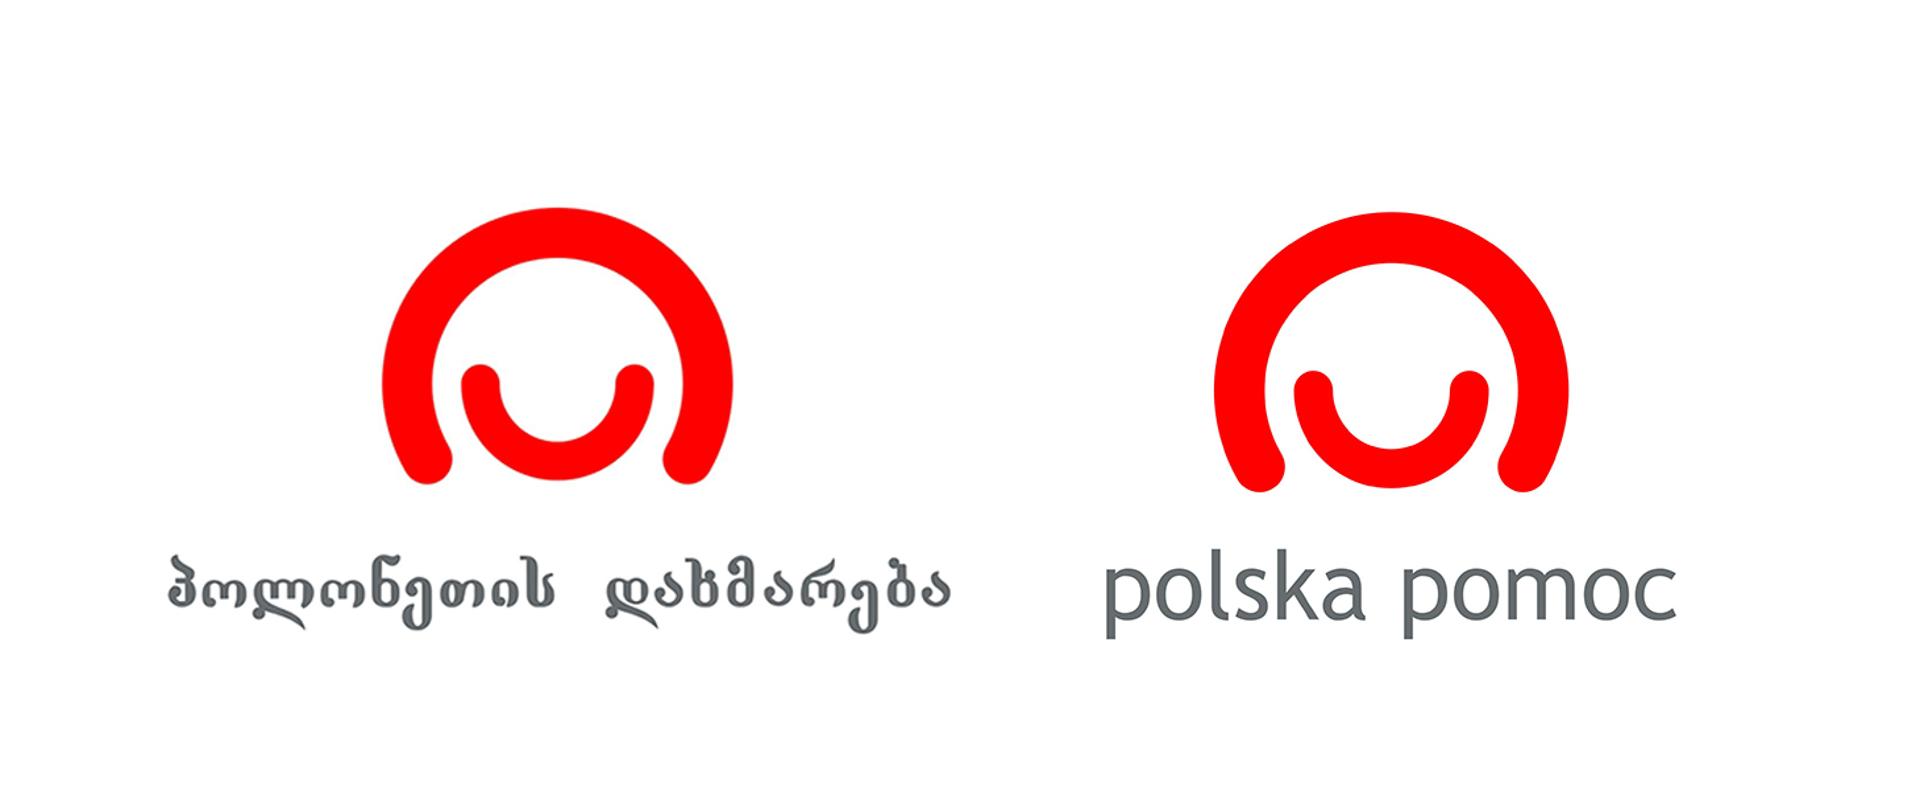 Baner z logo polskiej pomocy w języku polskim i gruzińskim